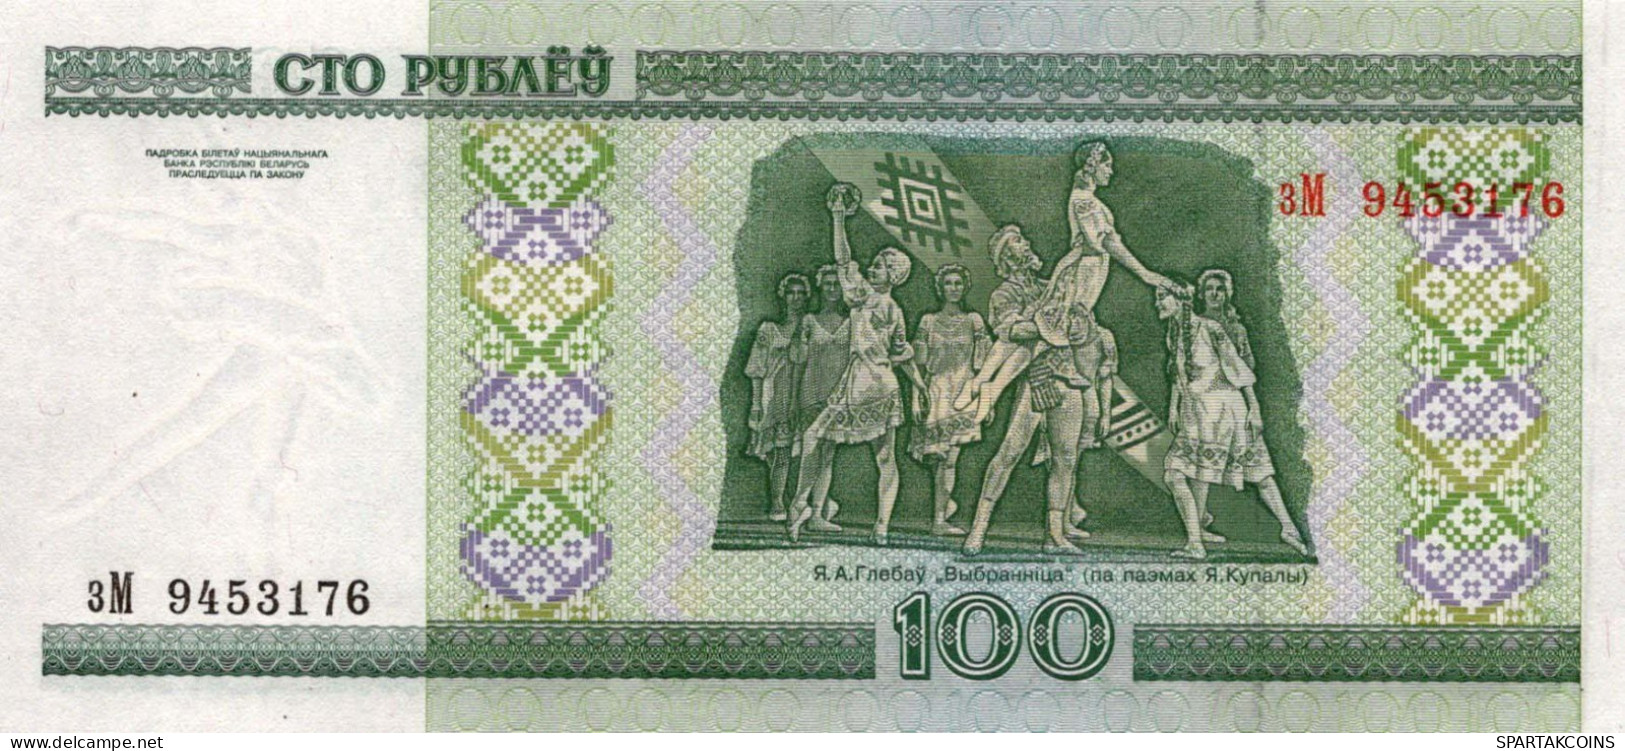 100 RUBLES 2000 BELARUS Papiergeld Banknote #PJ306 - [11] Local Banknote Issues